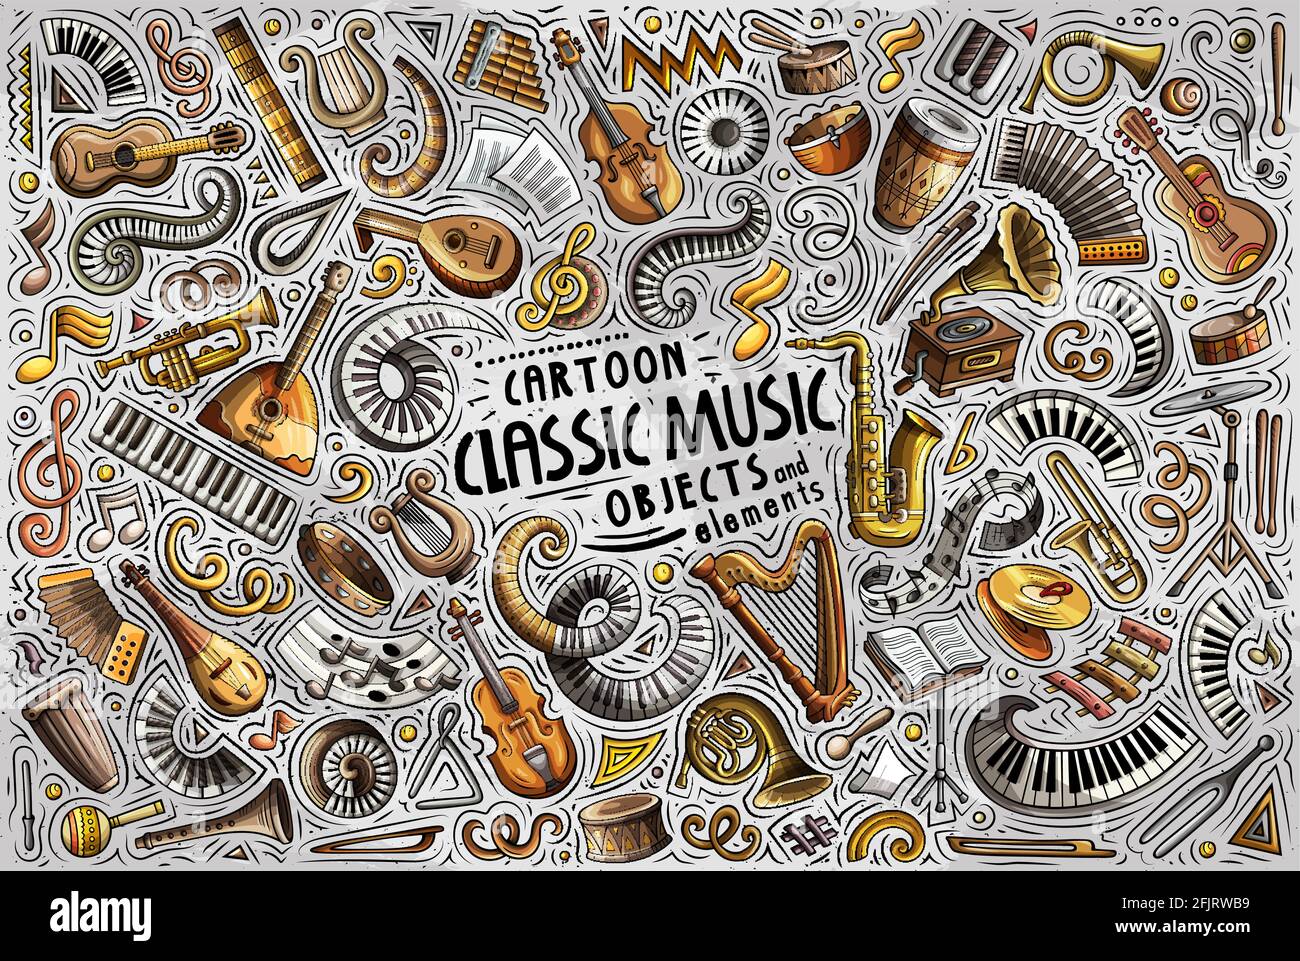 Ensemble de dessins animés à la main et vectoriels colorés comprenant des objets, des symboles et des éléments de thème de musique classique Illustration de Vecteur